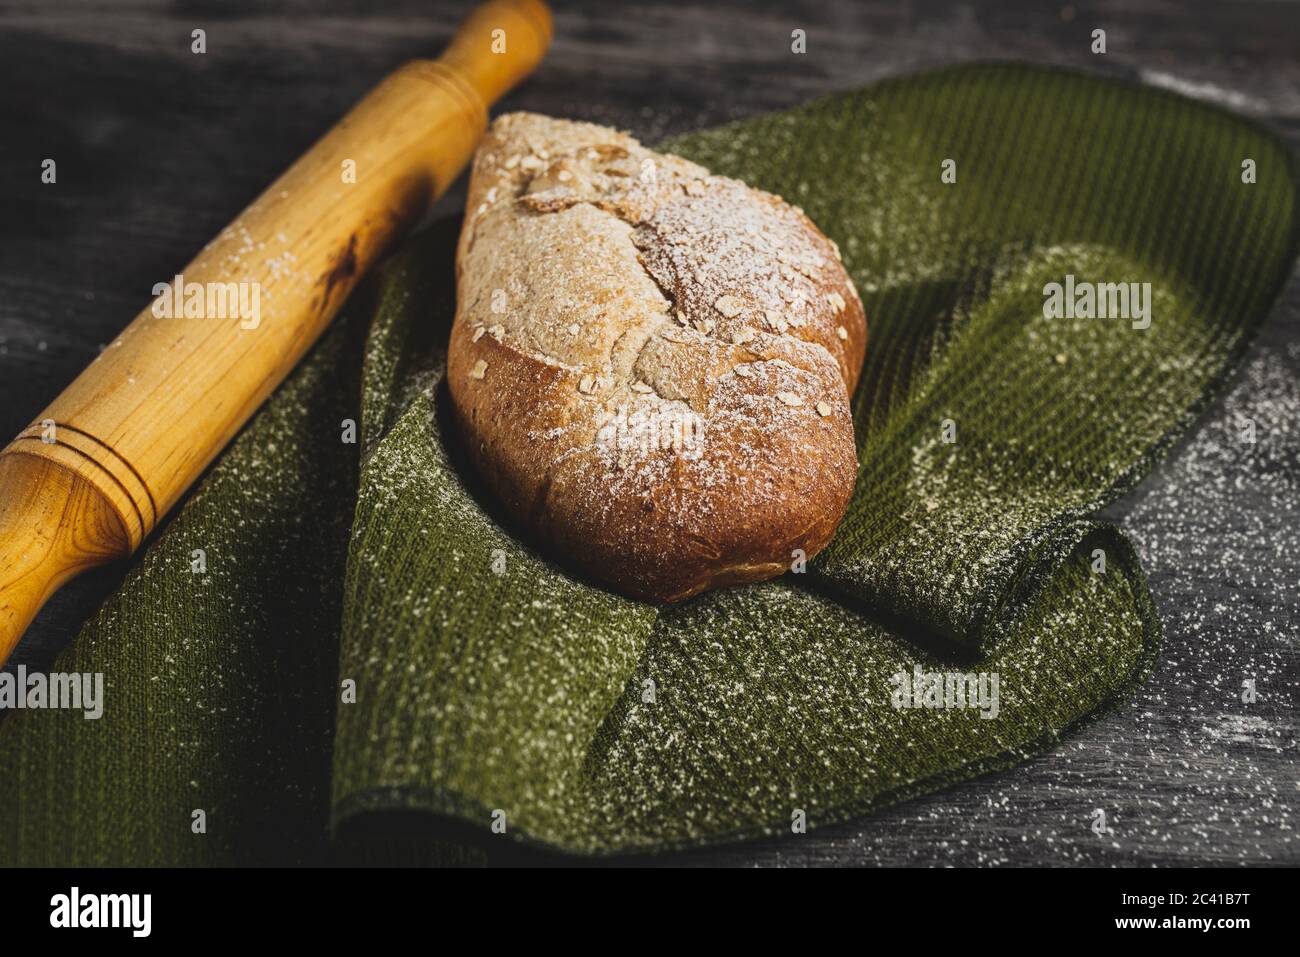 Fotos von Brot und Pasta Stockfoto